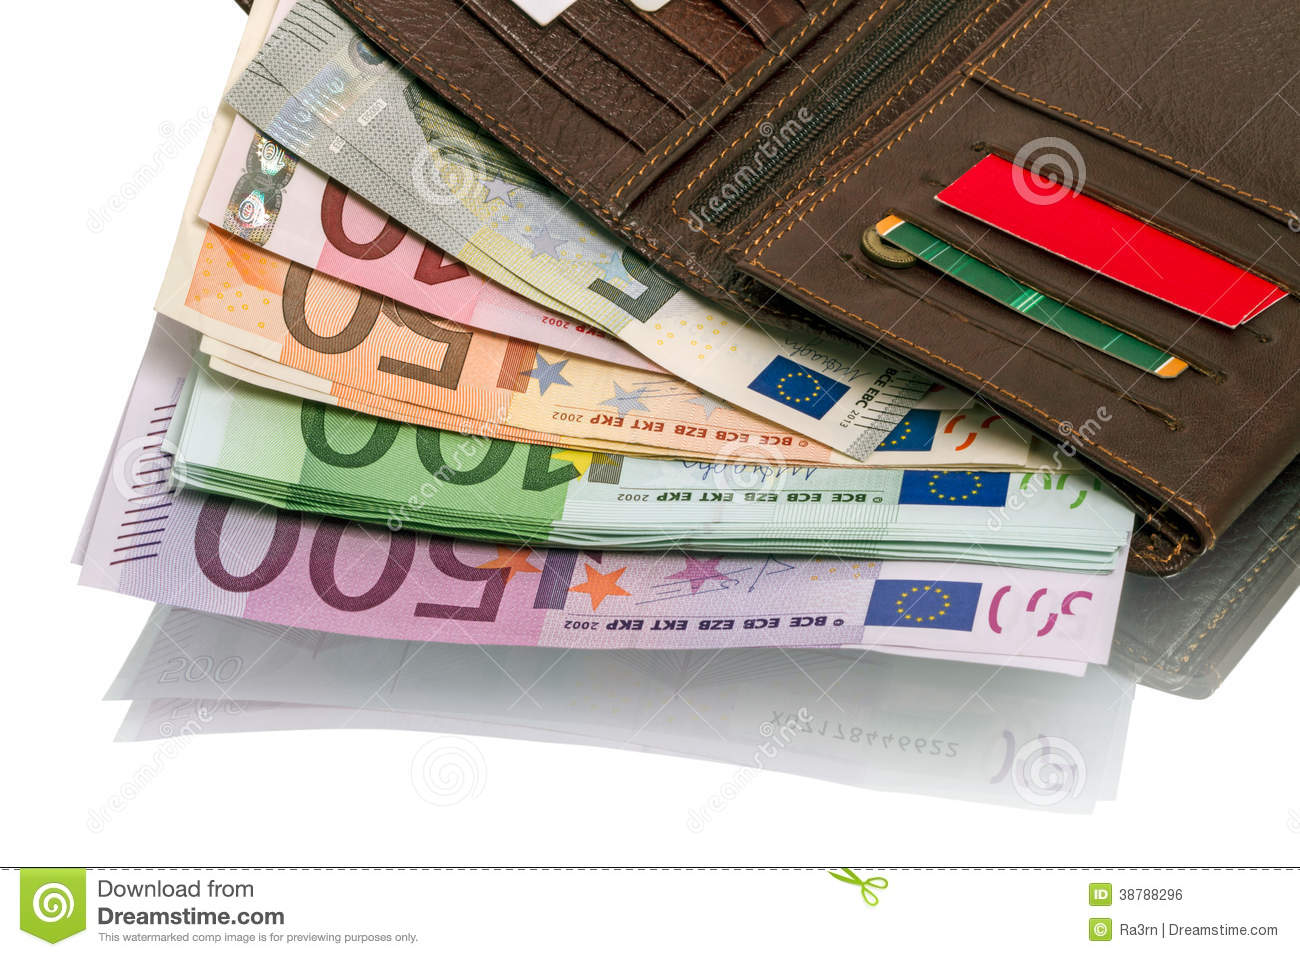 BEAU GESTE D’UN COMPATRIOTE EN ITALIE :Un Sénégalais trouve un portefeuille avec plus de 2000 euros, une carte de crédit, un Poste Pay et le rapporte à la police